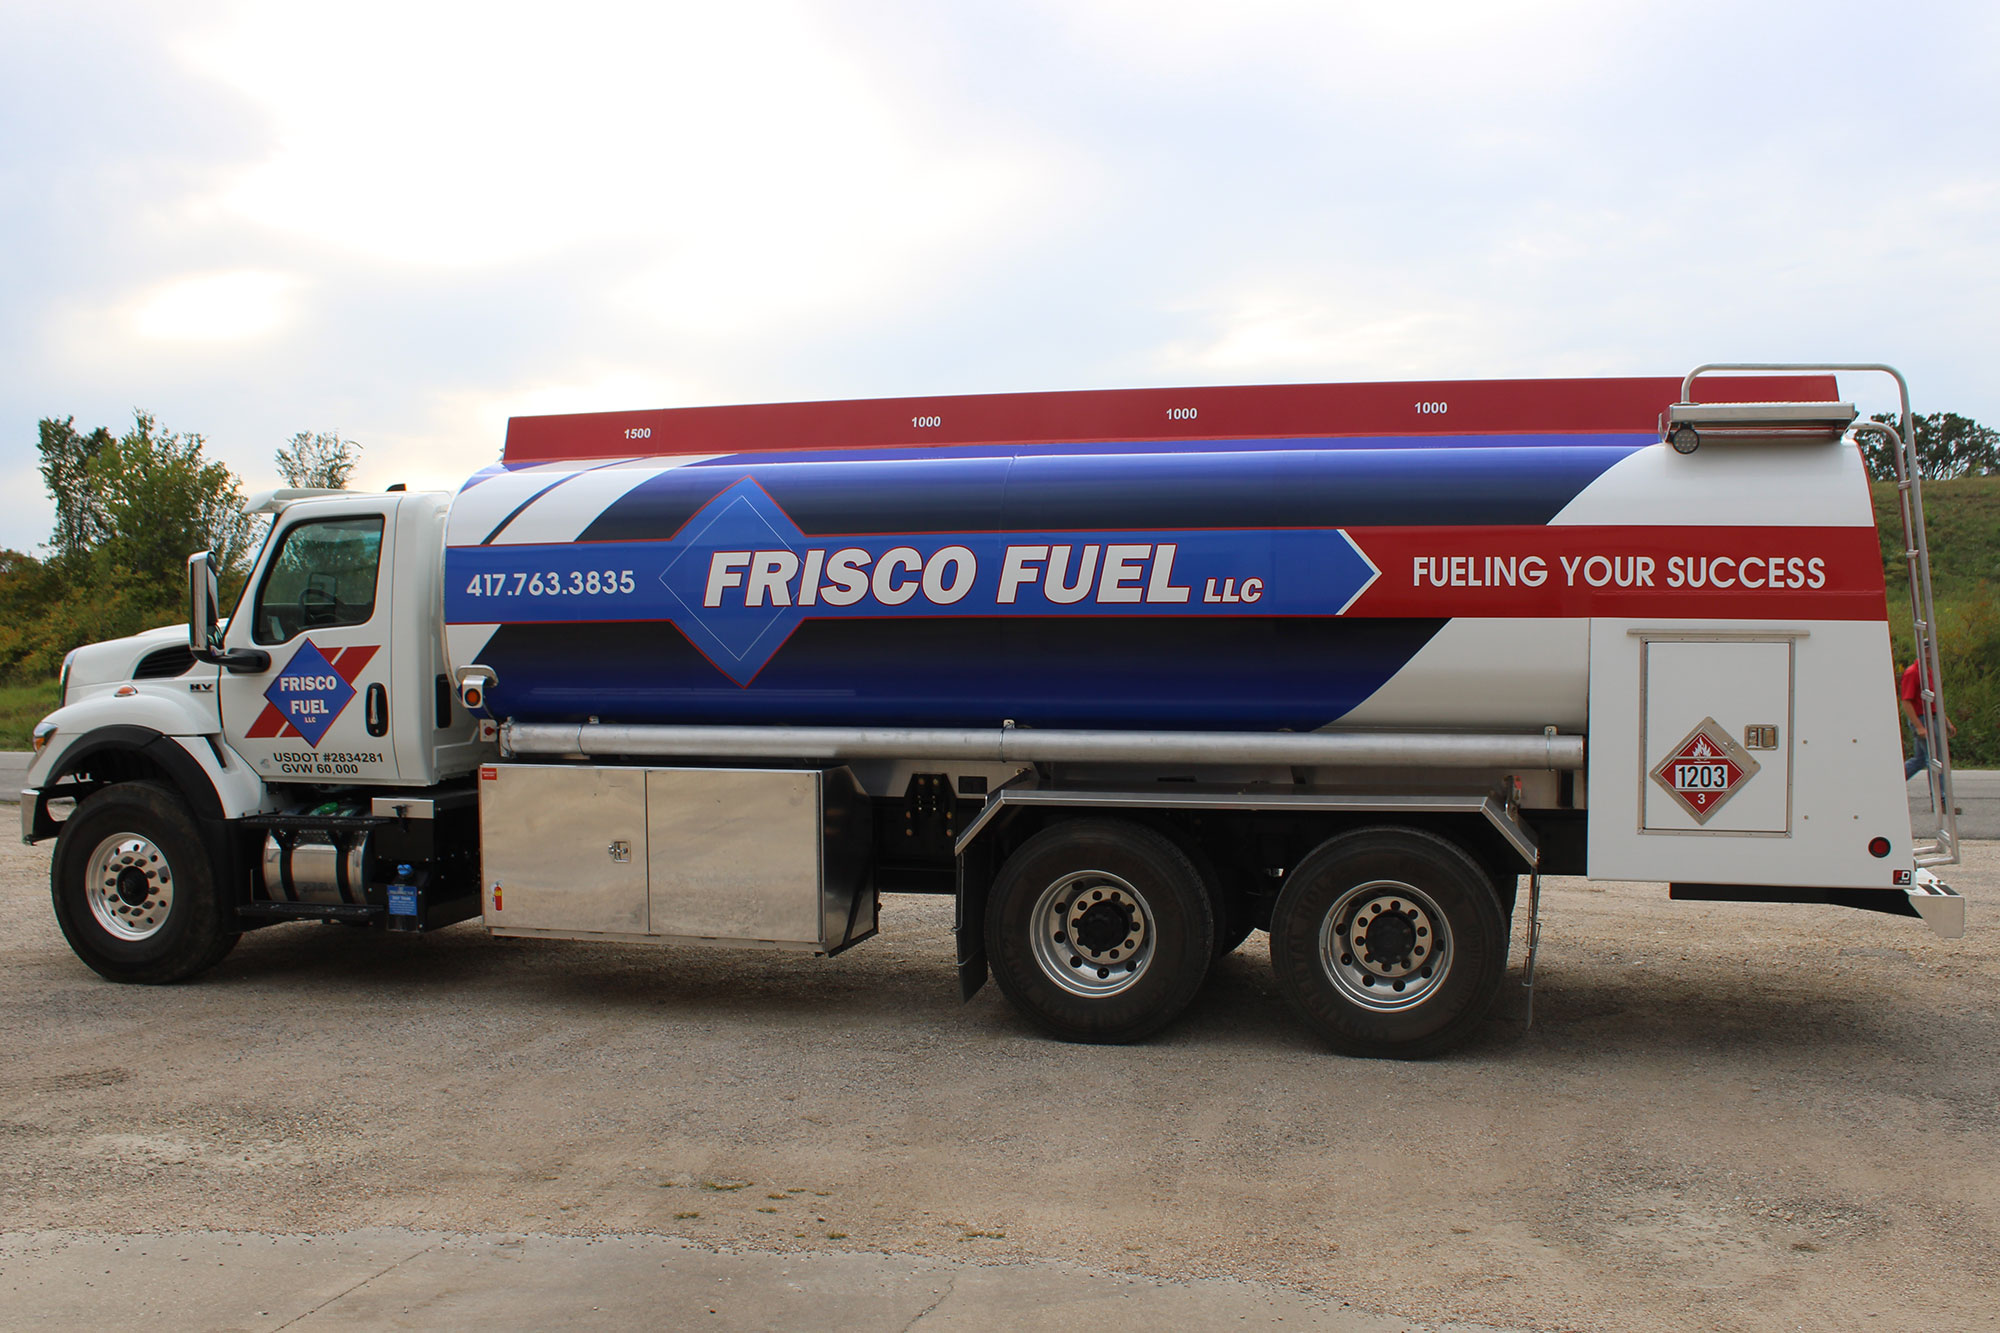 Frisco Fuel Tanker Truck Wrap Commercial Vehicle 3m Vinyl Wraps Columbia Missouri